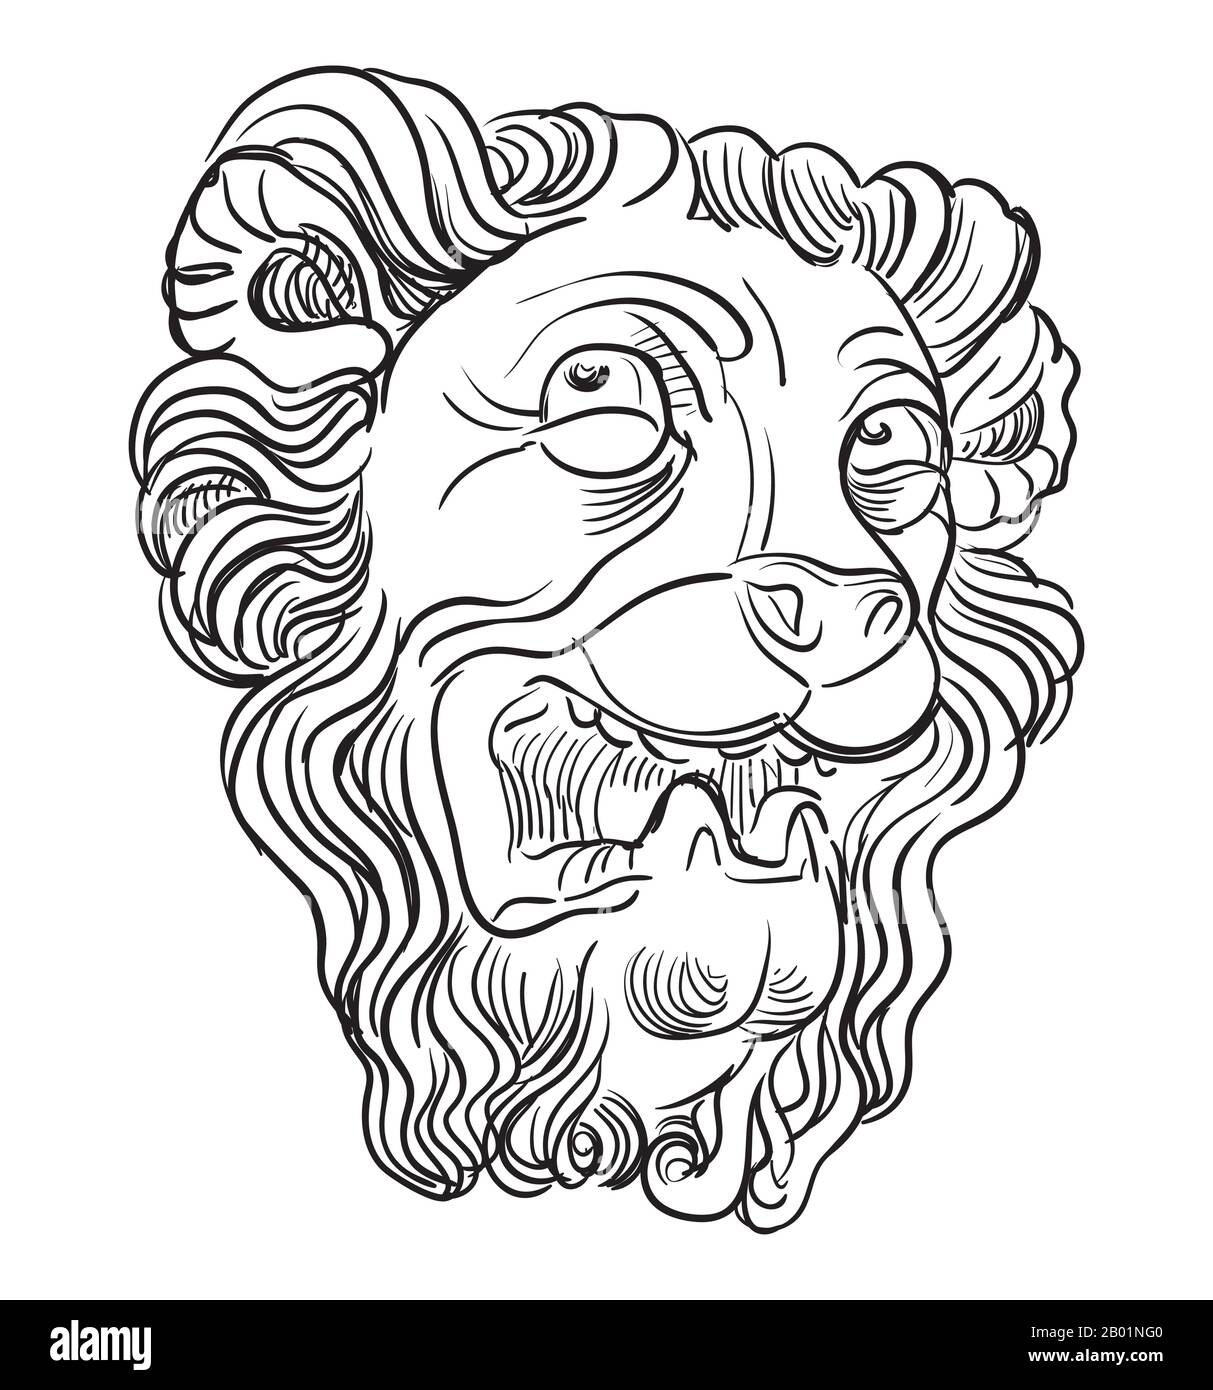 Esquisse d'un détail architectural sous la forme d'une tête de lion, vue de profil. Illustration du dessin vectoriel à la main en couleur noire isolée sur le backgro blanc Illustration de Vecteur